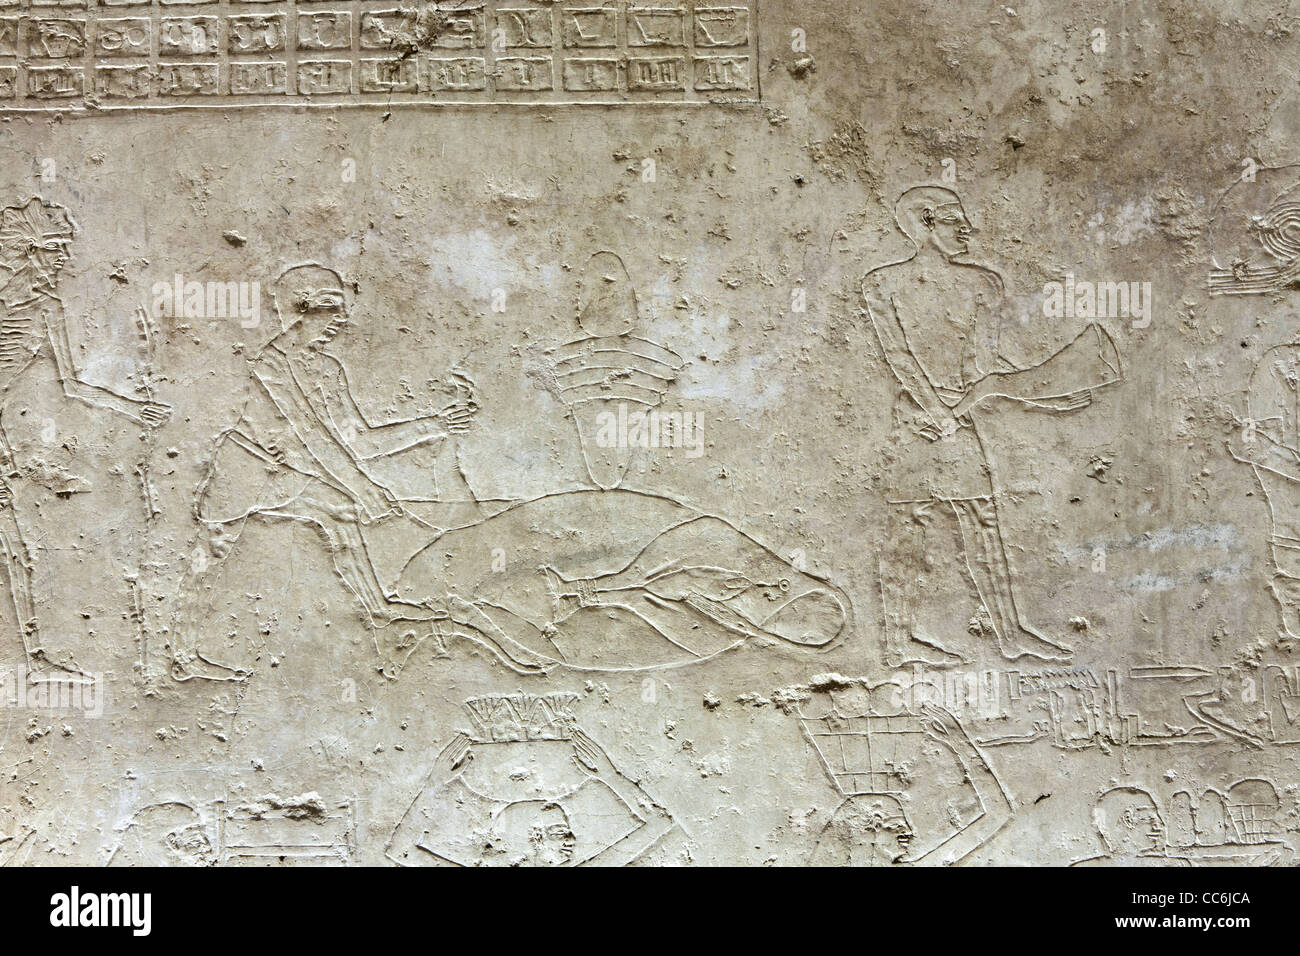 Rilievi nel Regno di mezzo la tomba di Ukh Hotep figlio di Senbi a Meir , a nord ovest di Asyut in Medio Egitto Foto Stock